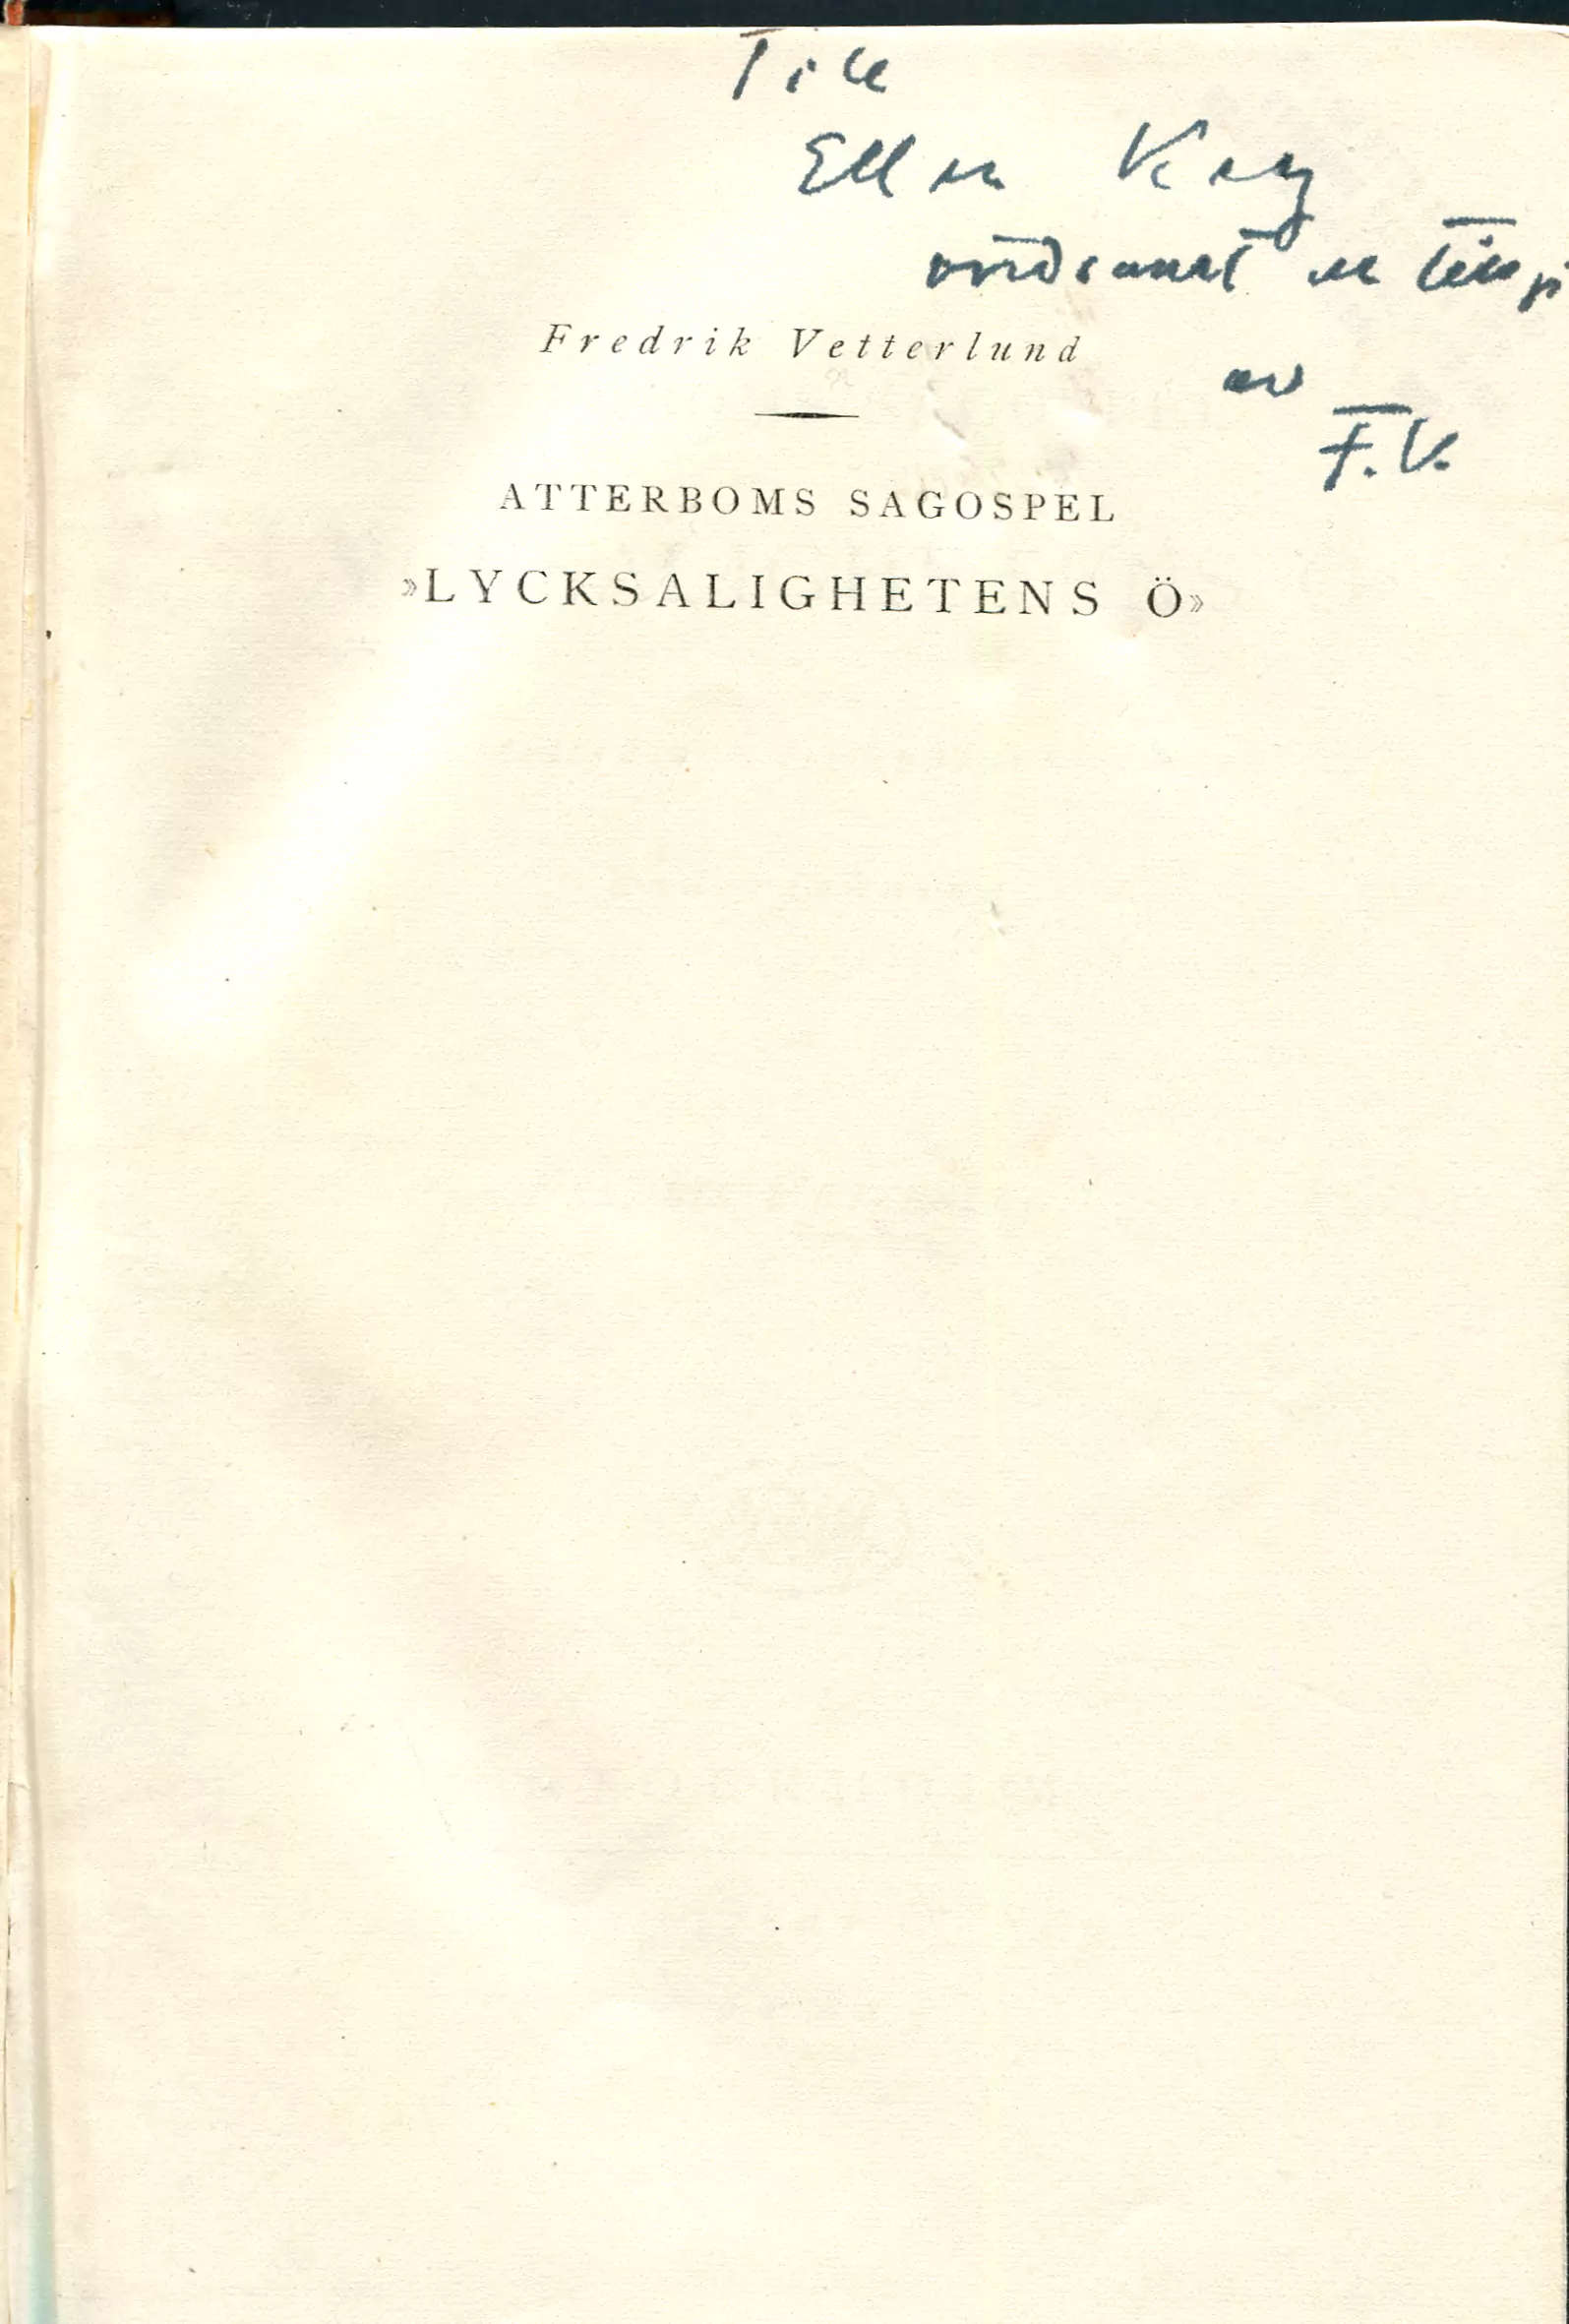 Atterboms sagospel "Lycksalighetens ö" , Stockholm 1924